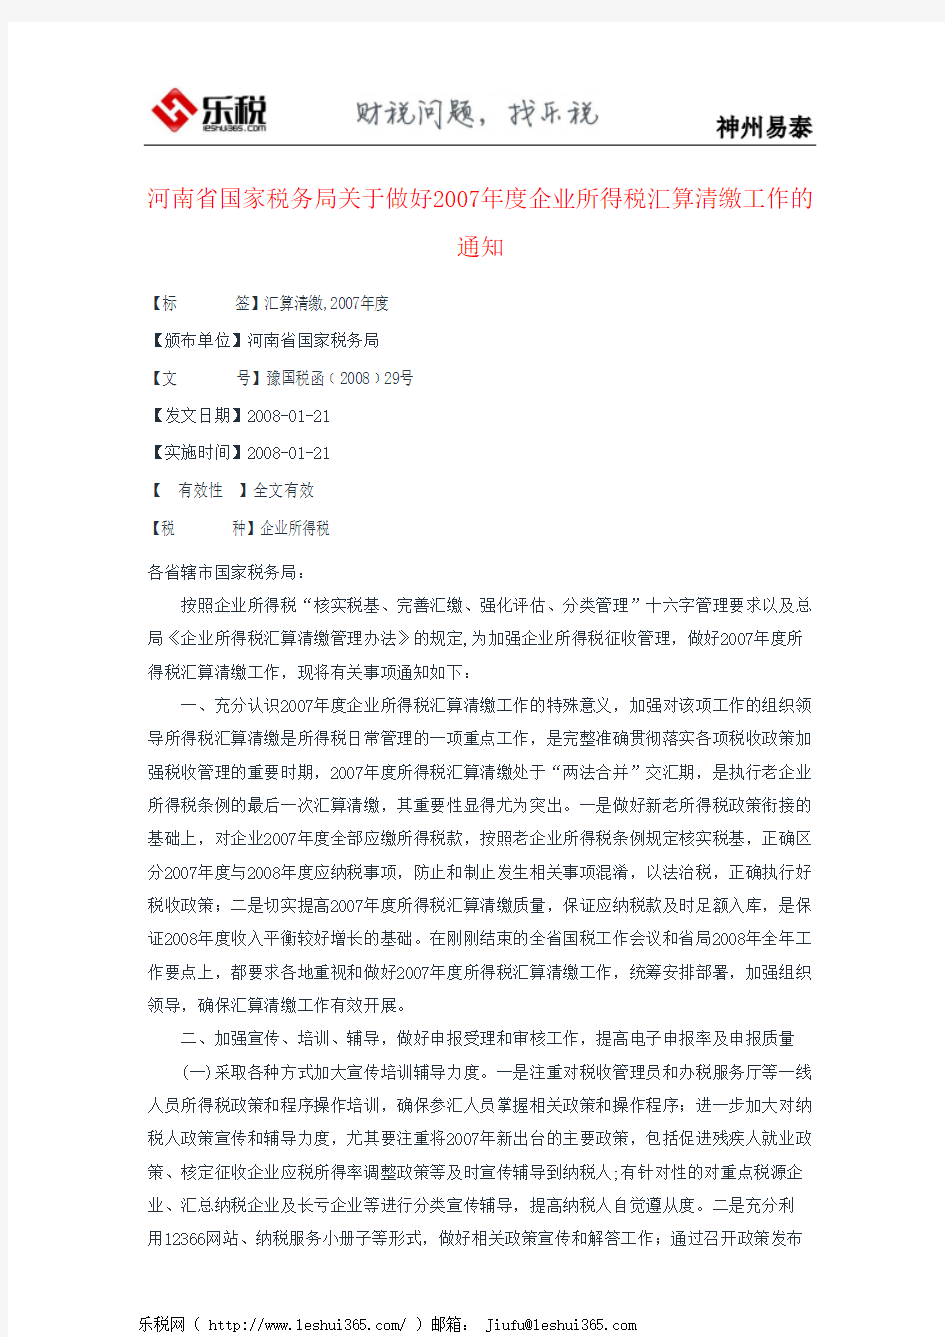 河南省国家税务局关于做好2007年度企业所得税汇算清缴工作的通知